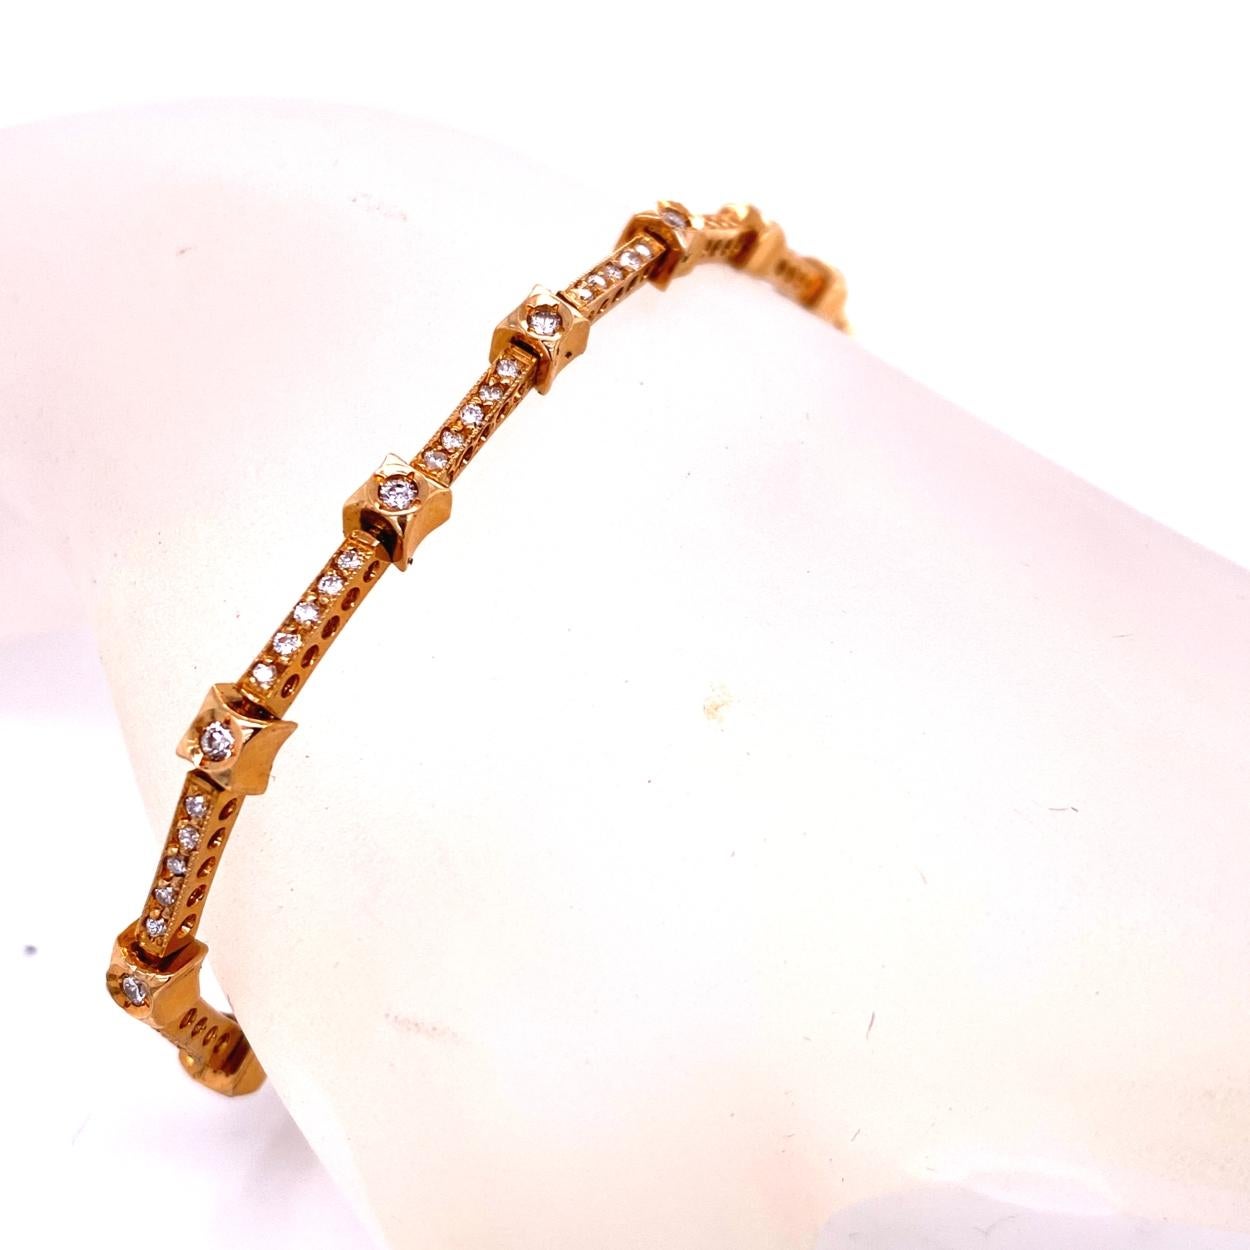 Ce bracelet de diamants est composé de 13 maillons comprenant 14 bagues serties de diamants ronds de 1,6 mm de diamètre et 13 barrettes serties de 65 diamants ronds de 1 mm de diamètre. Le bracelet est fabriqué en or jaune 14 carats avec des barres